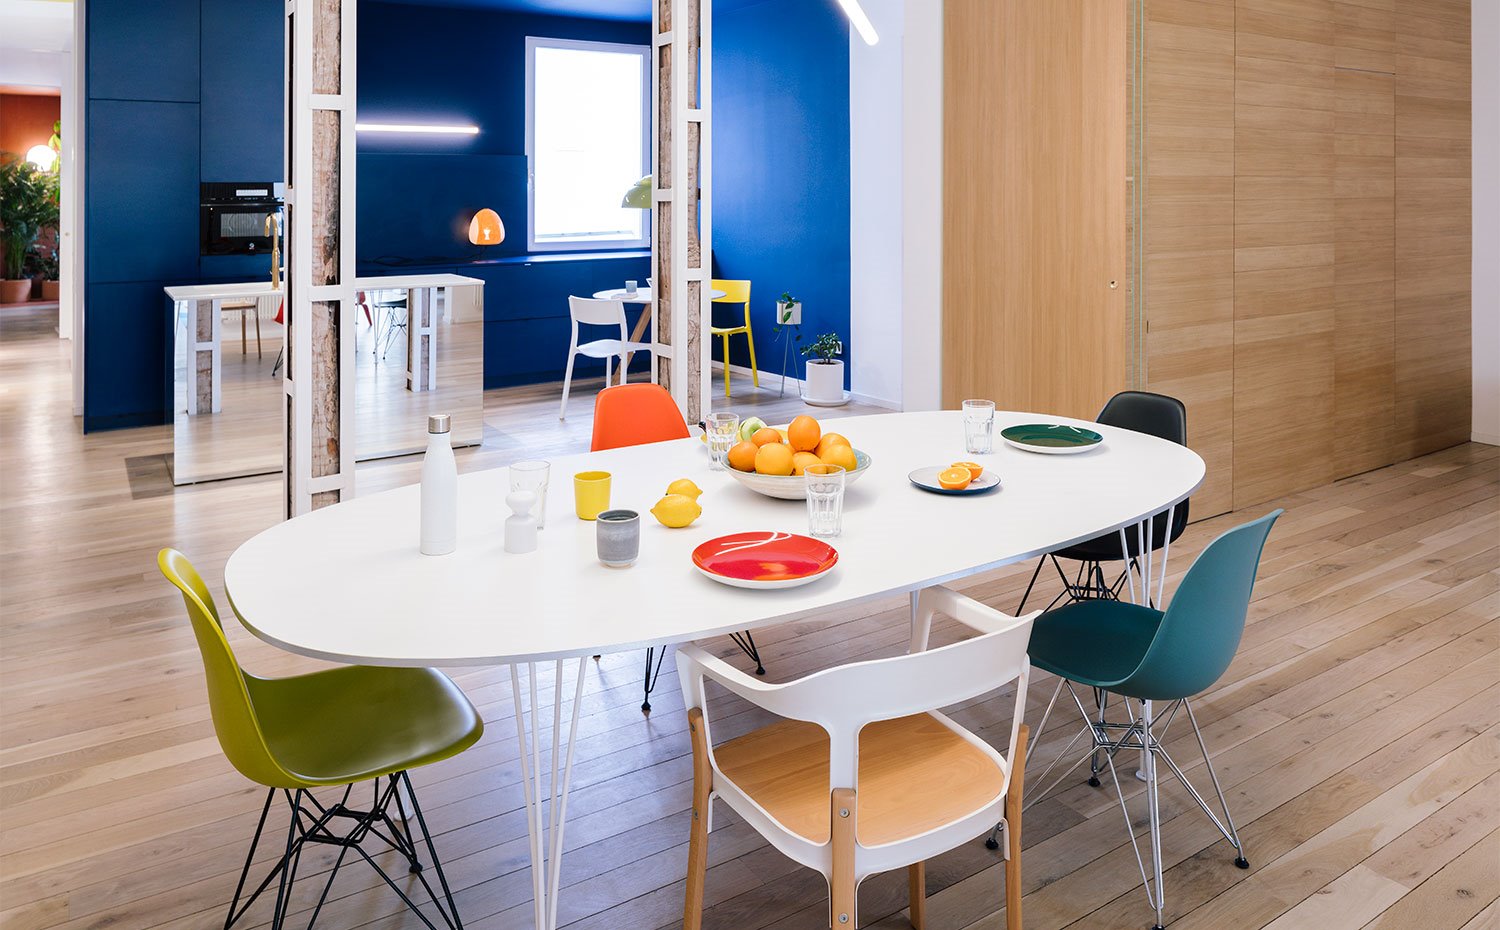 Mesa de comedor en blanco, con sillas en diferentes diseños y colores, carpintería en madera natural, pared del fondo en azul